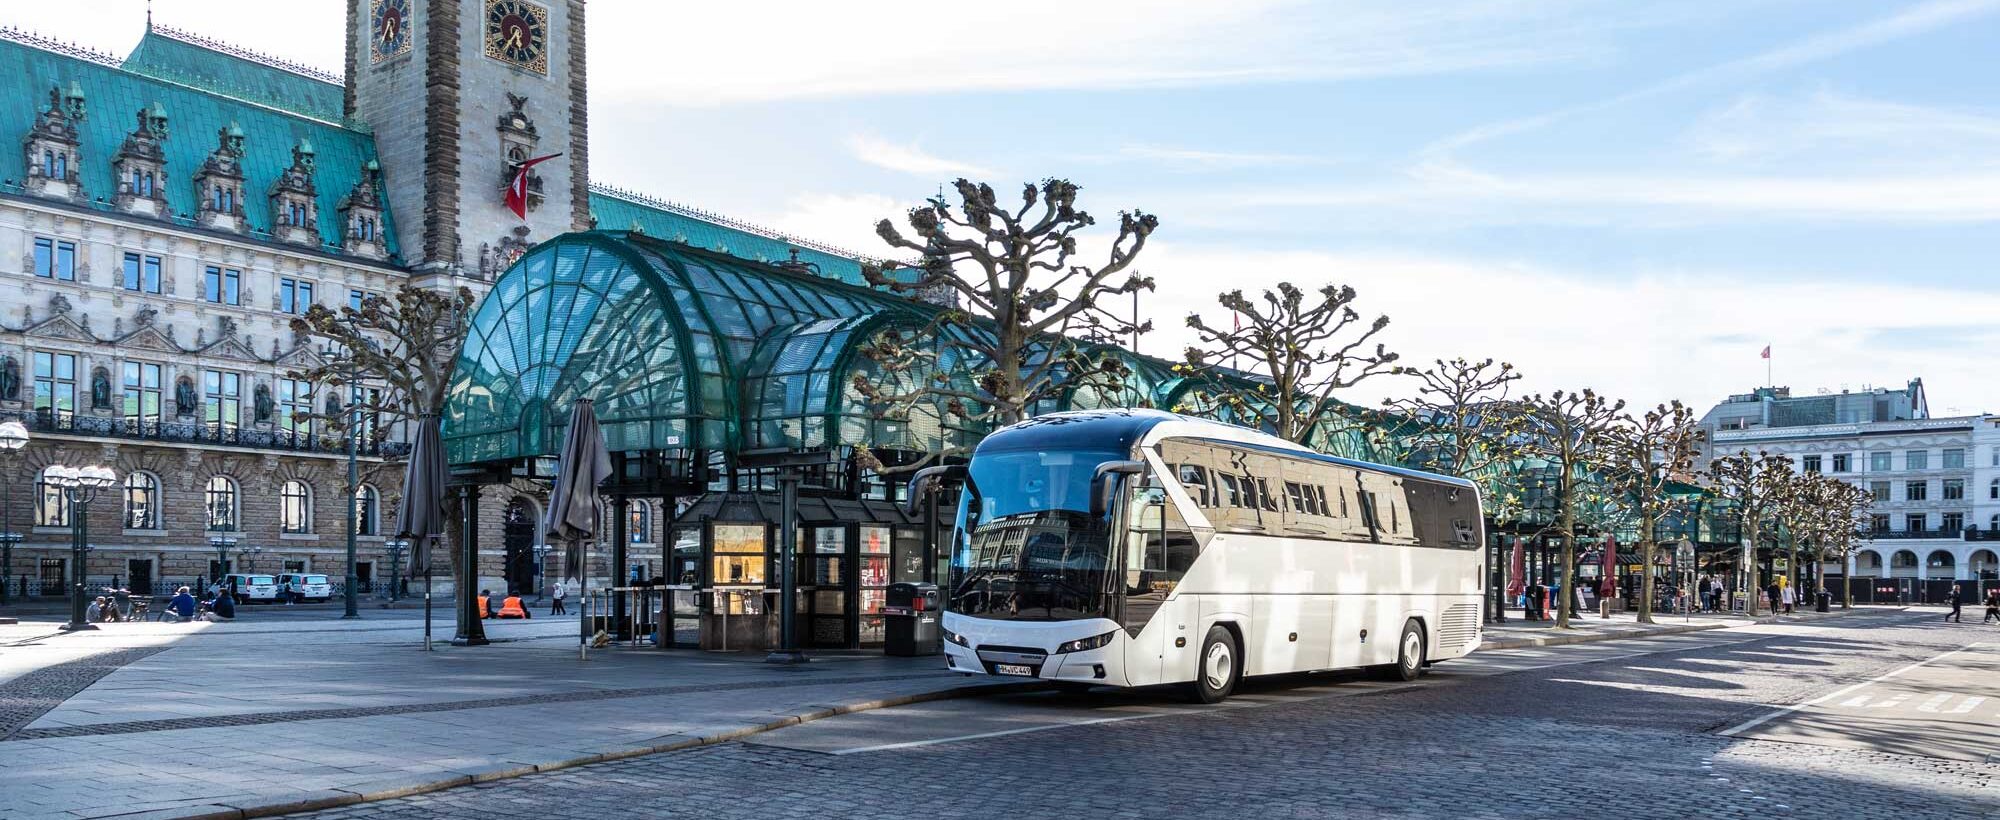 bus steht in der hamburger innenstadt für eine städtereise